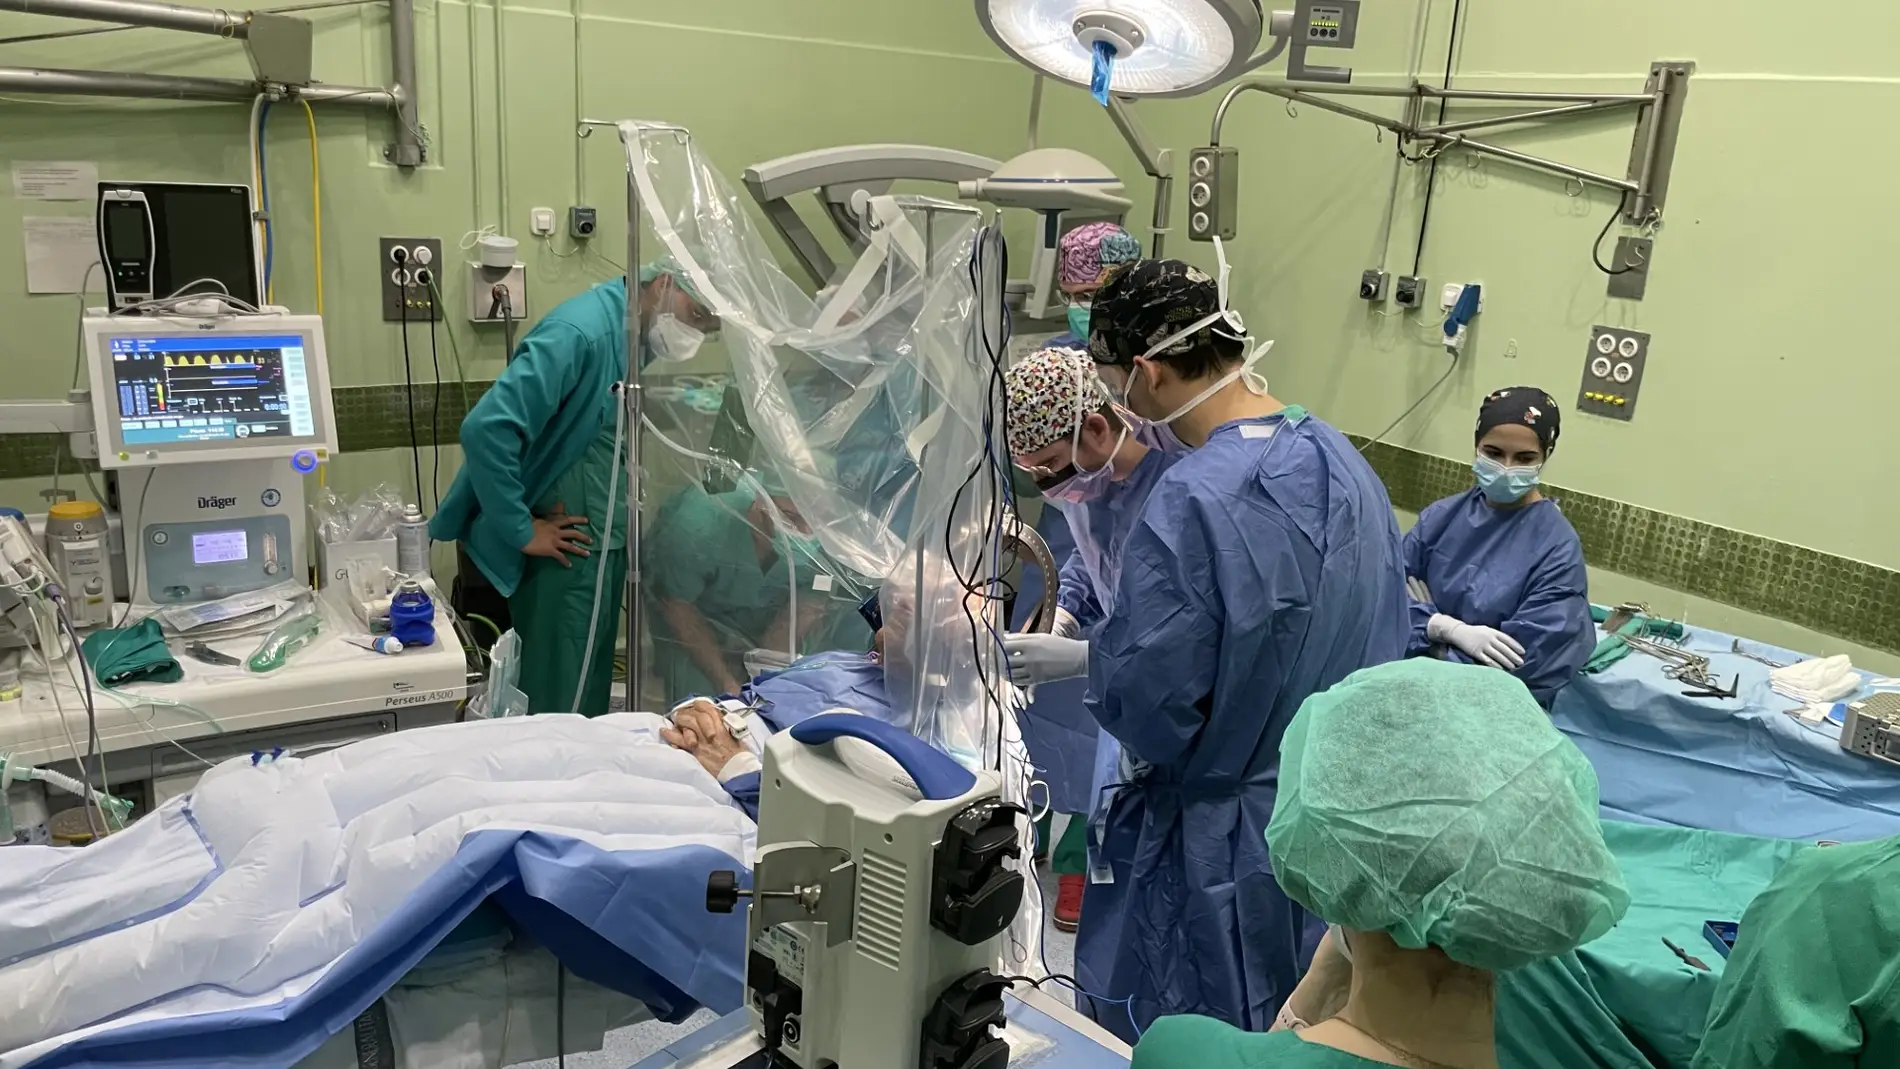 Intervención quirúrgica al paciente con Parkinson en el Hospital General Universitario de Elche. 